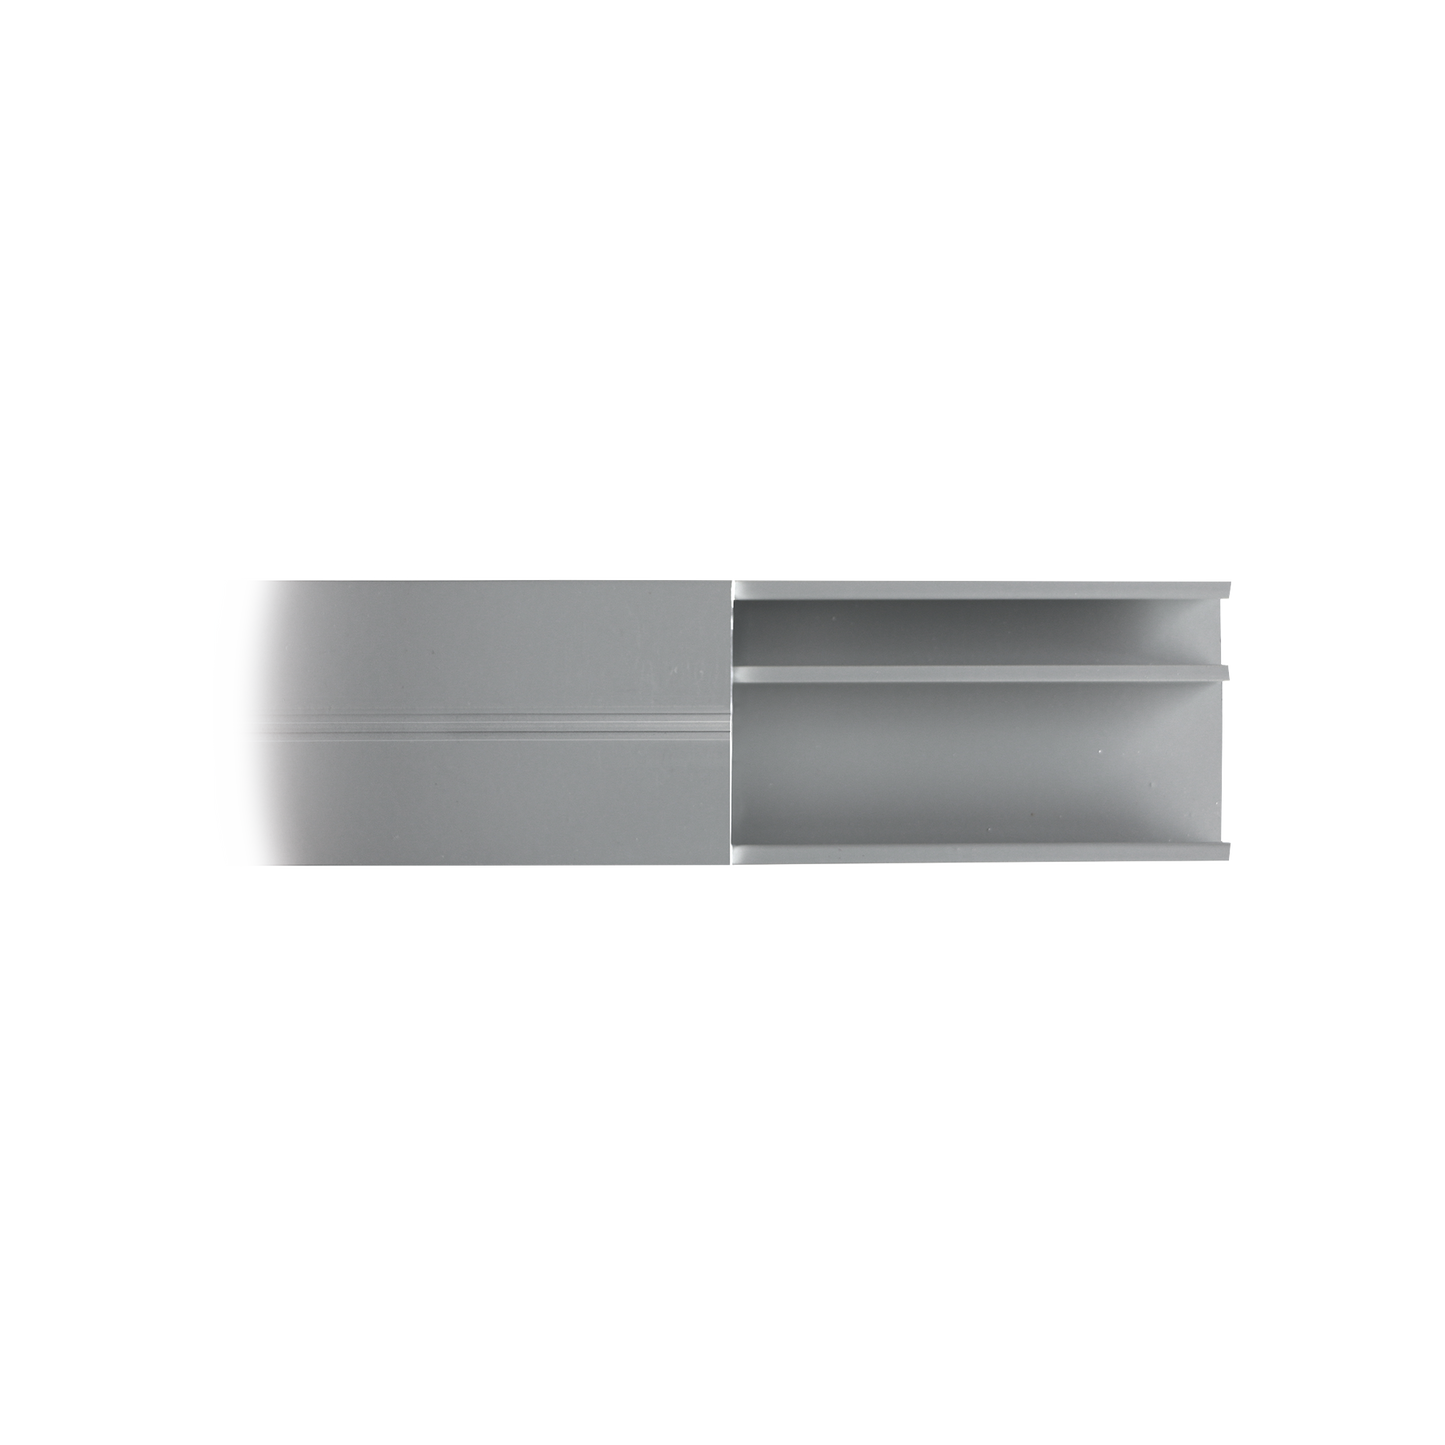 Canaleta de aluminio línea X color blanco, 53 x 14,66 mm, tramo de 2 metros